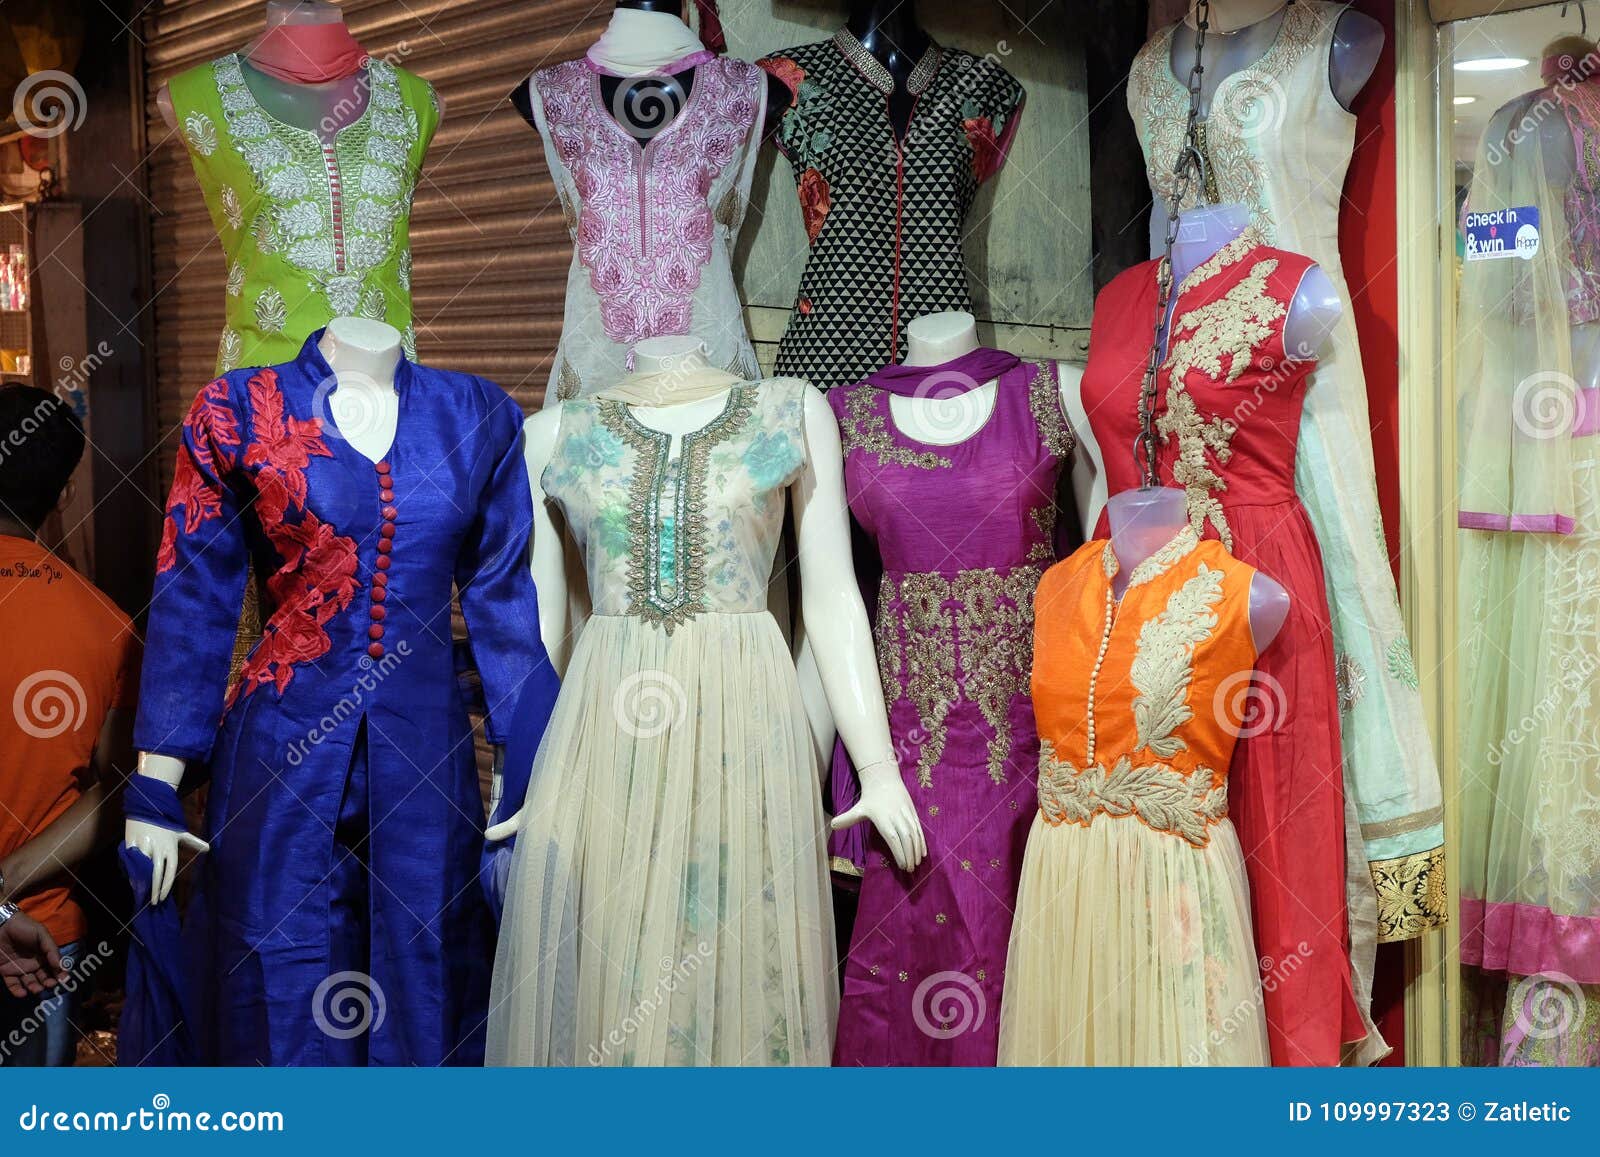 Τα μανεκέν έντυσαν ο αργότερα στα ινδικά φορέματα μπροστά από ένα λιανικό  κατάστημα υφασμάτων σε Kolkata Εκδοτική Στοκ Εικόνες - εικόνα από :  109997323